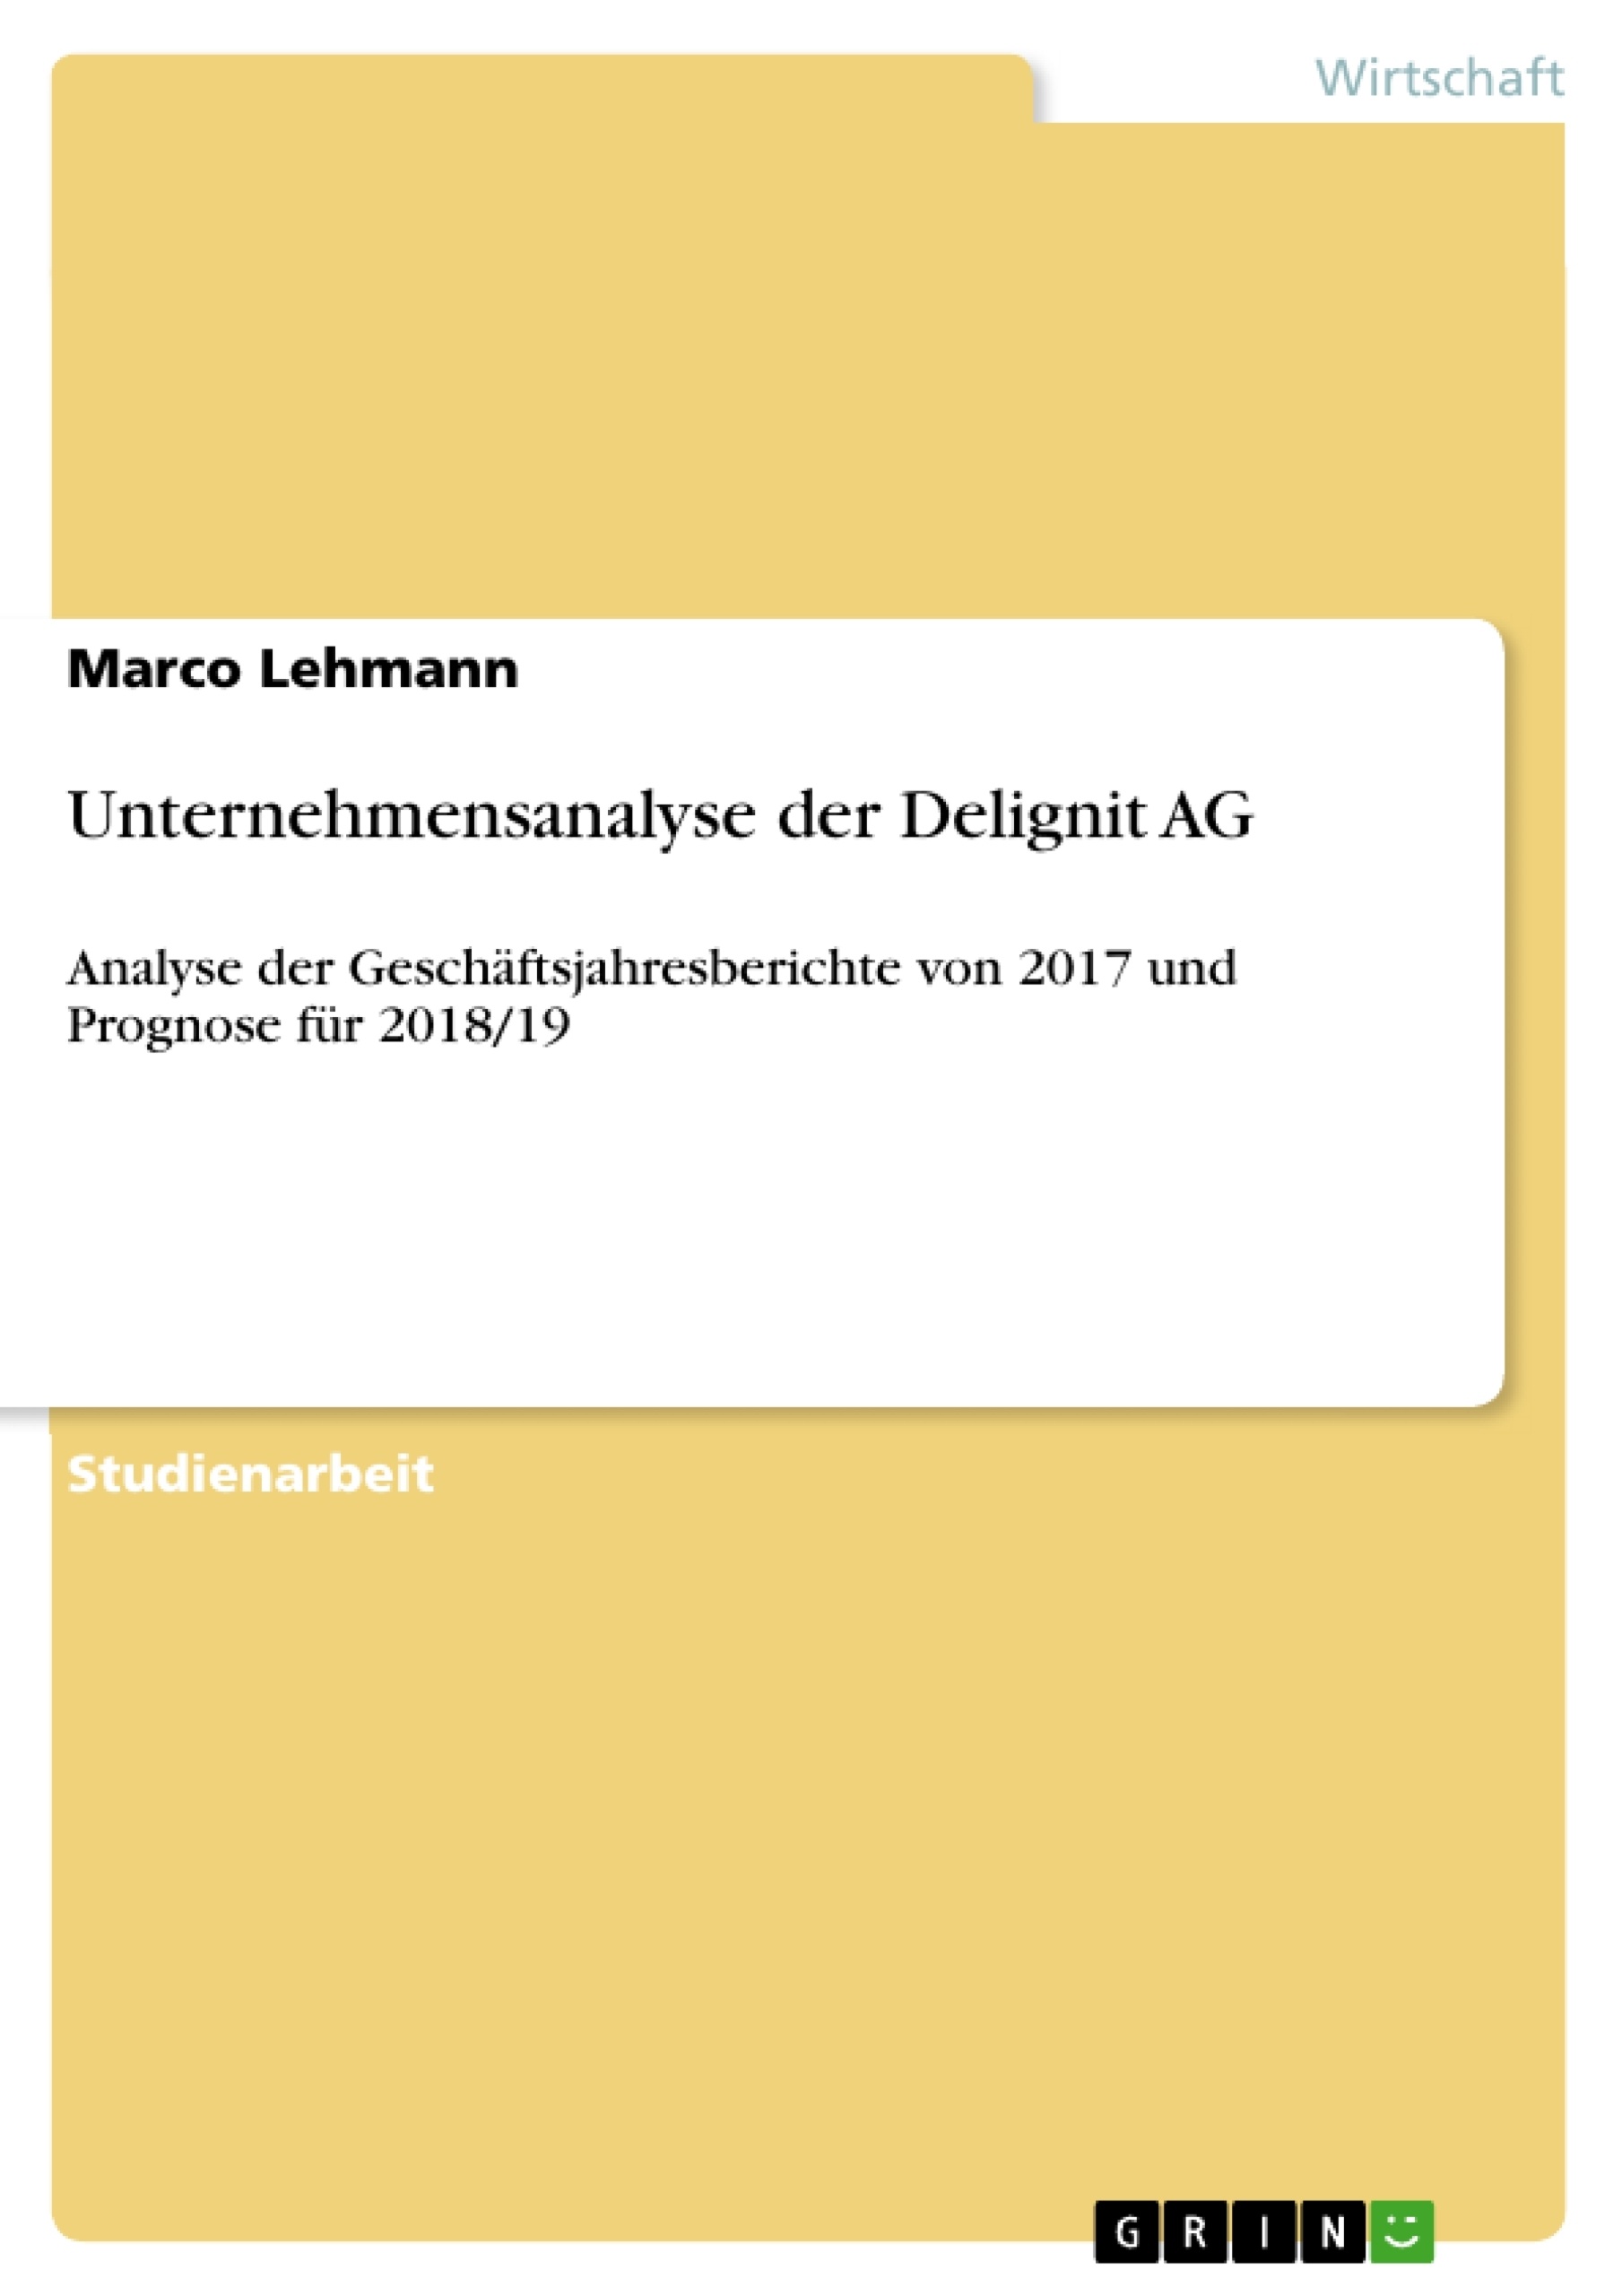 Title: Unternehmensanalyse der Delignit AG